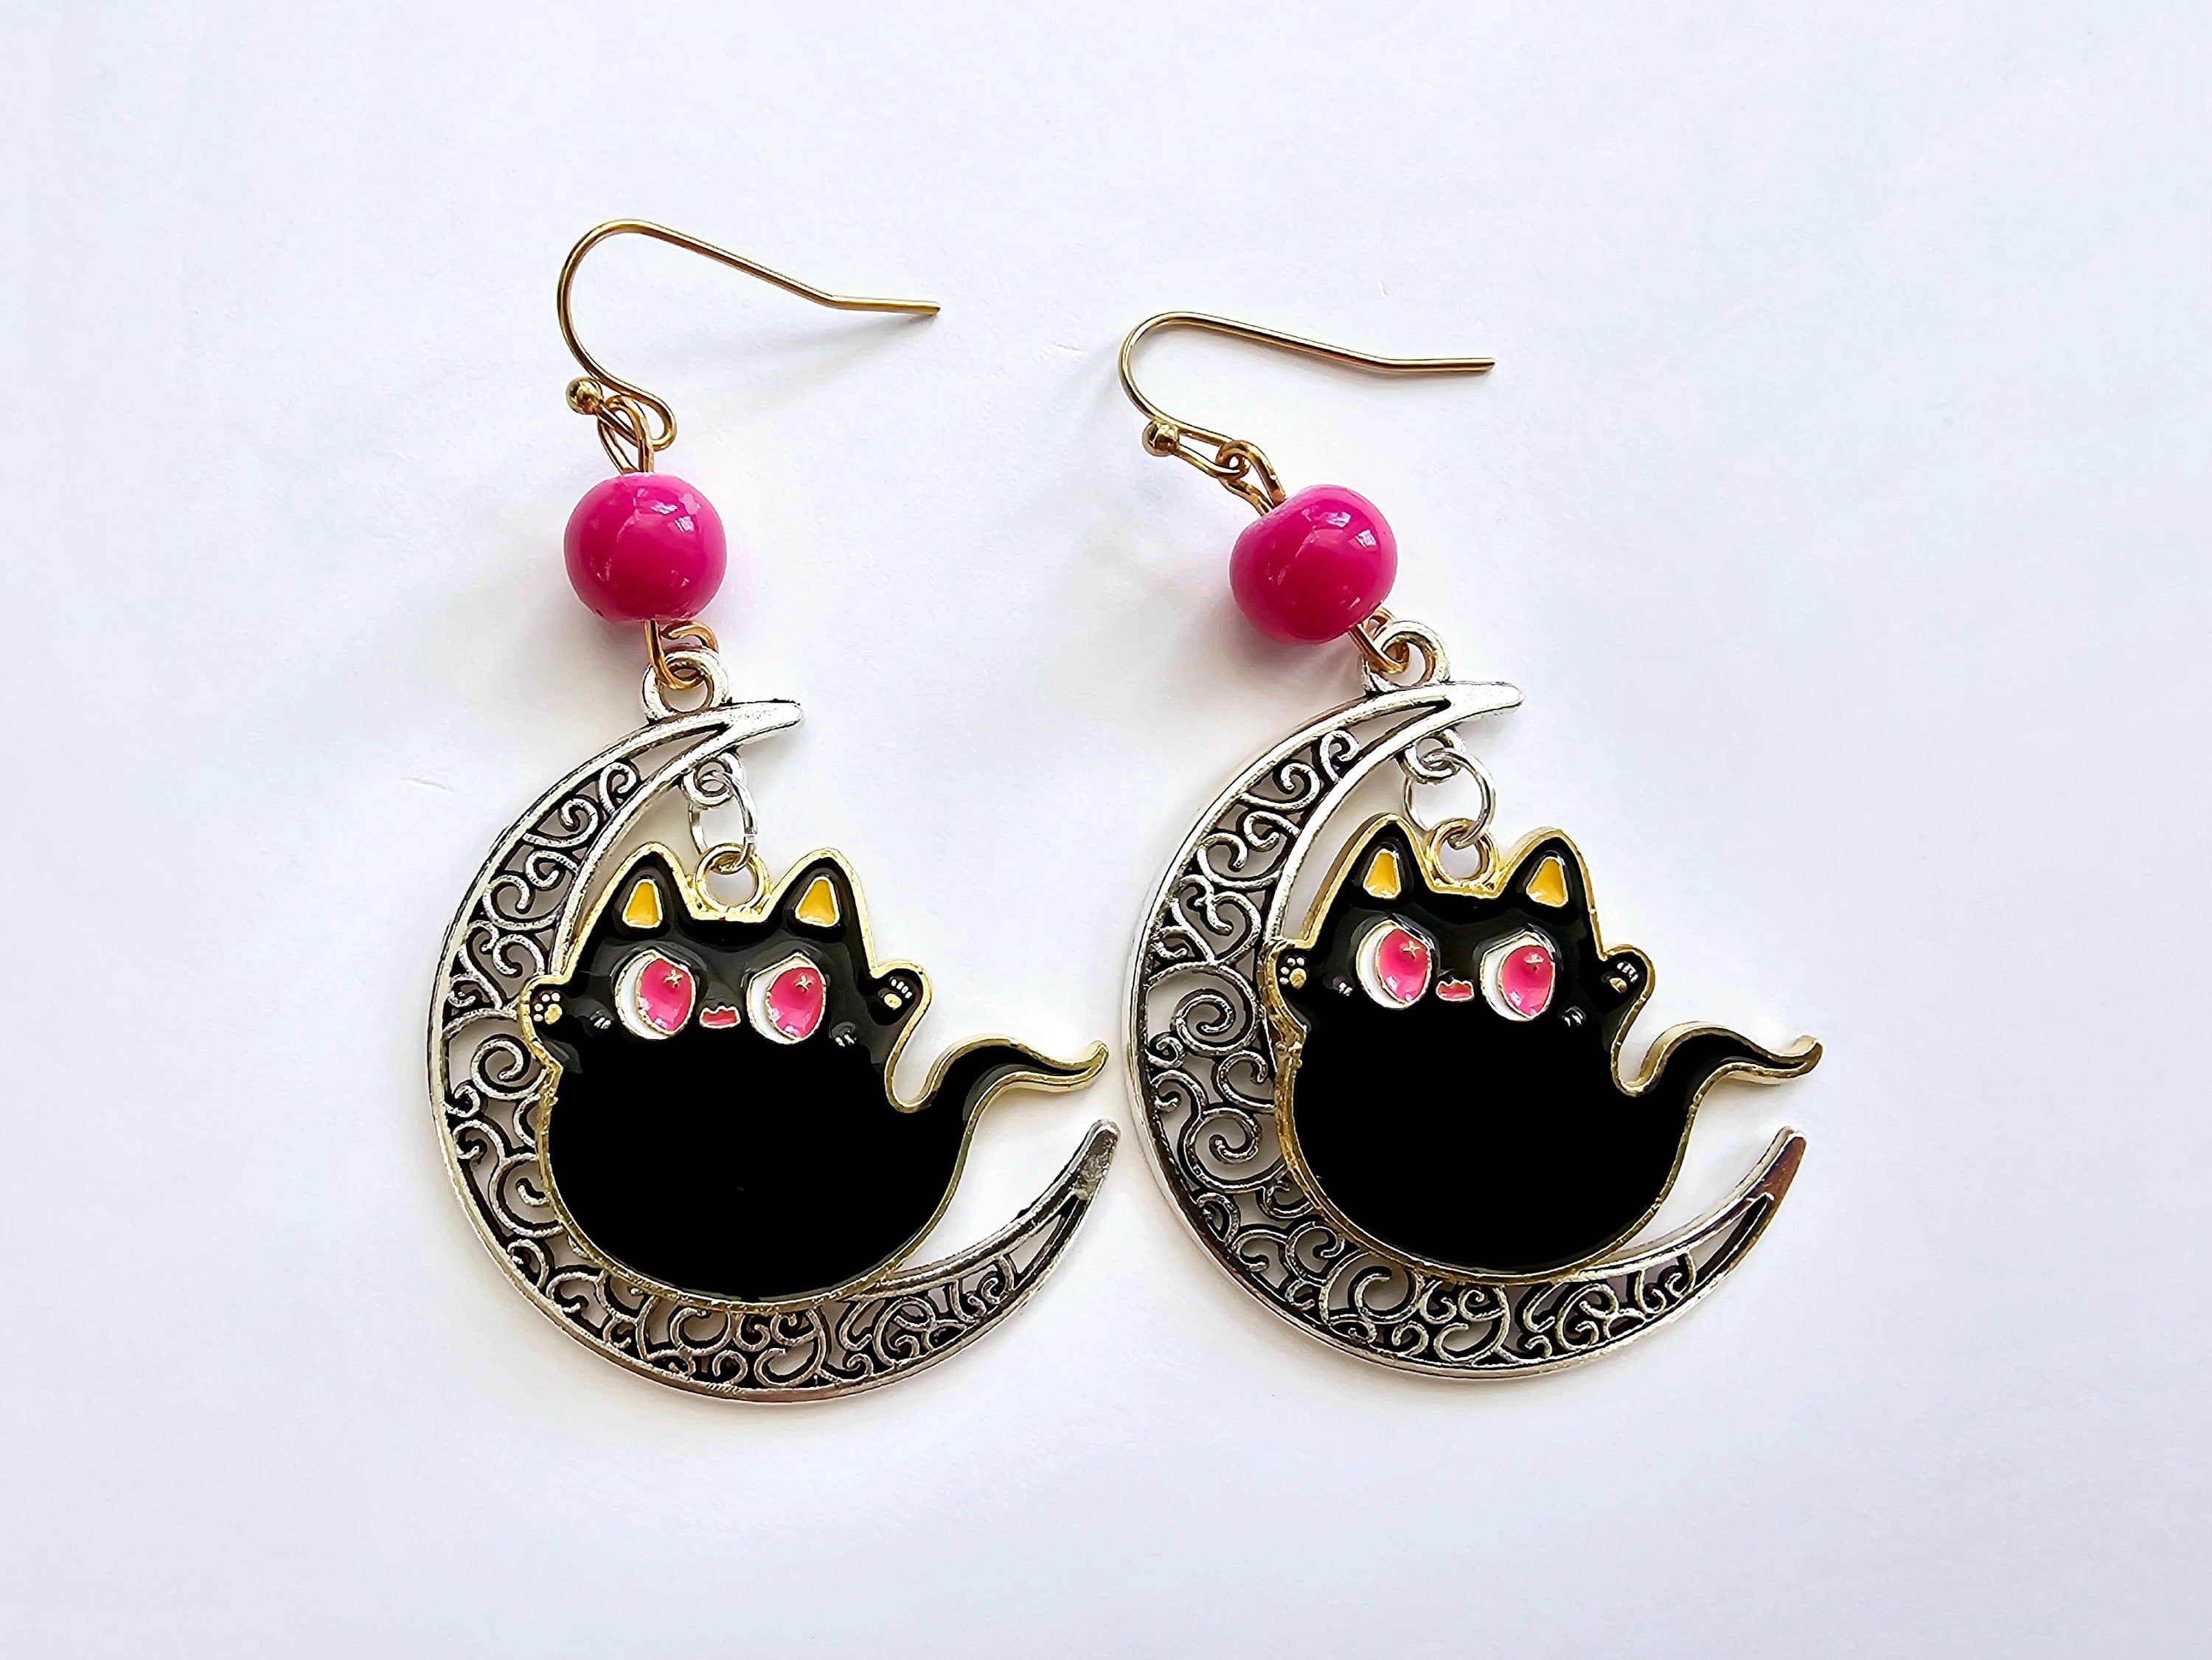 Black cat earrings, ghost earrings, pink and black earrings, crescent moon earrings.